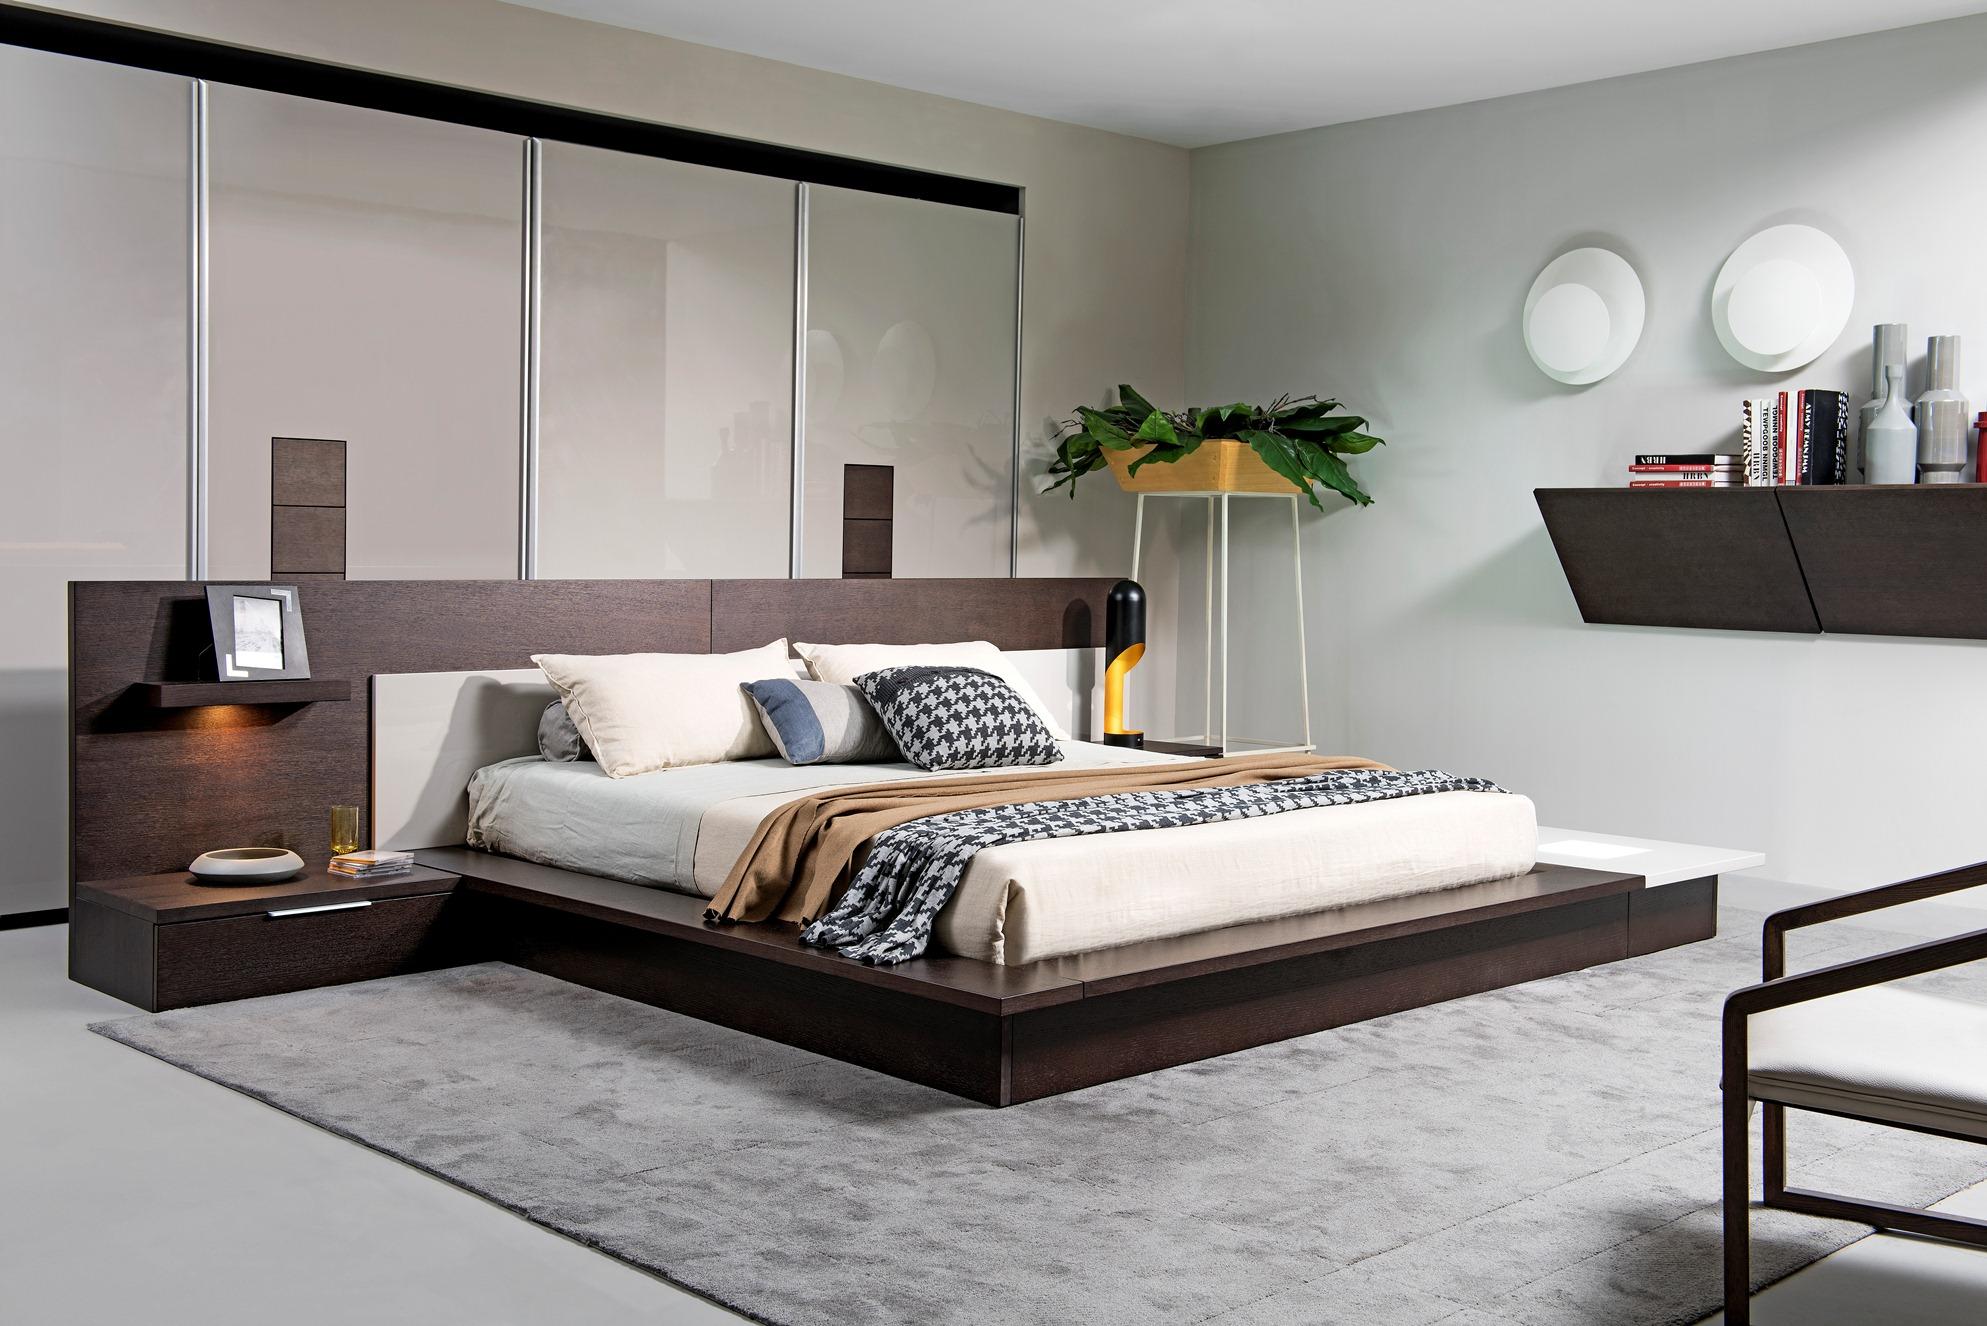 

    
VIG Modrest Torino Brown Grey King Bedroom Set 3 Ps w/Lights Built-in Nightstand
